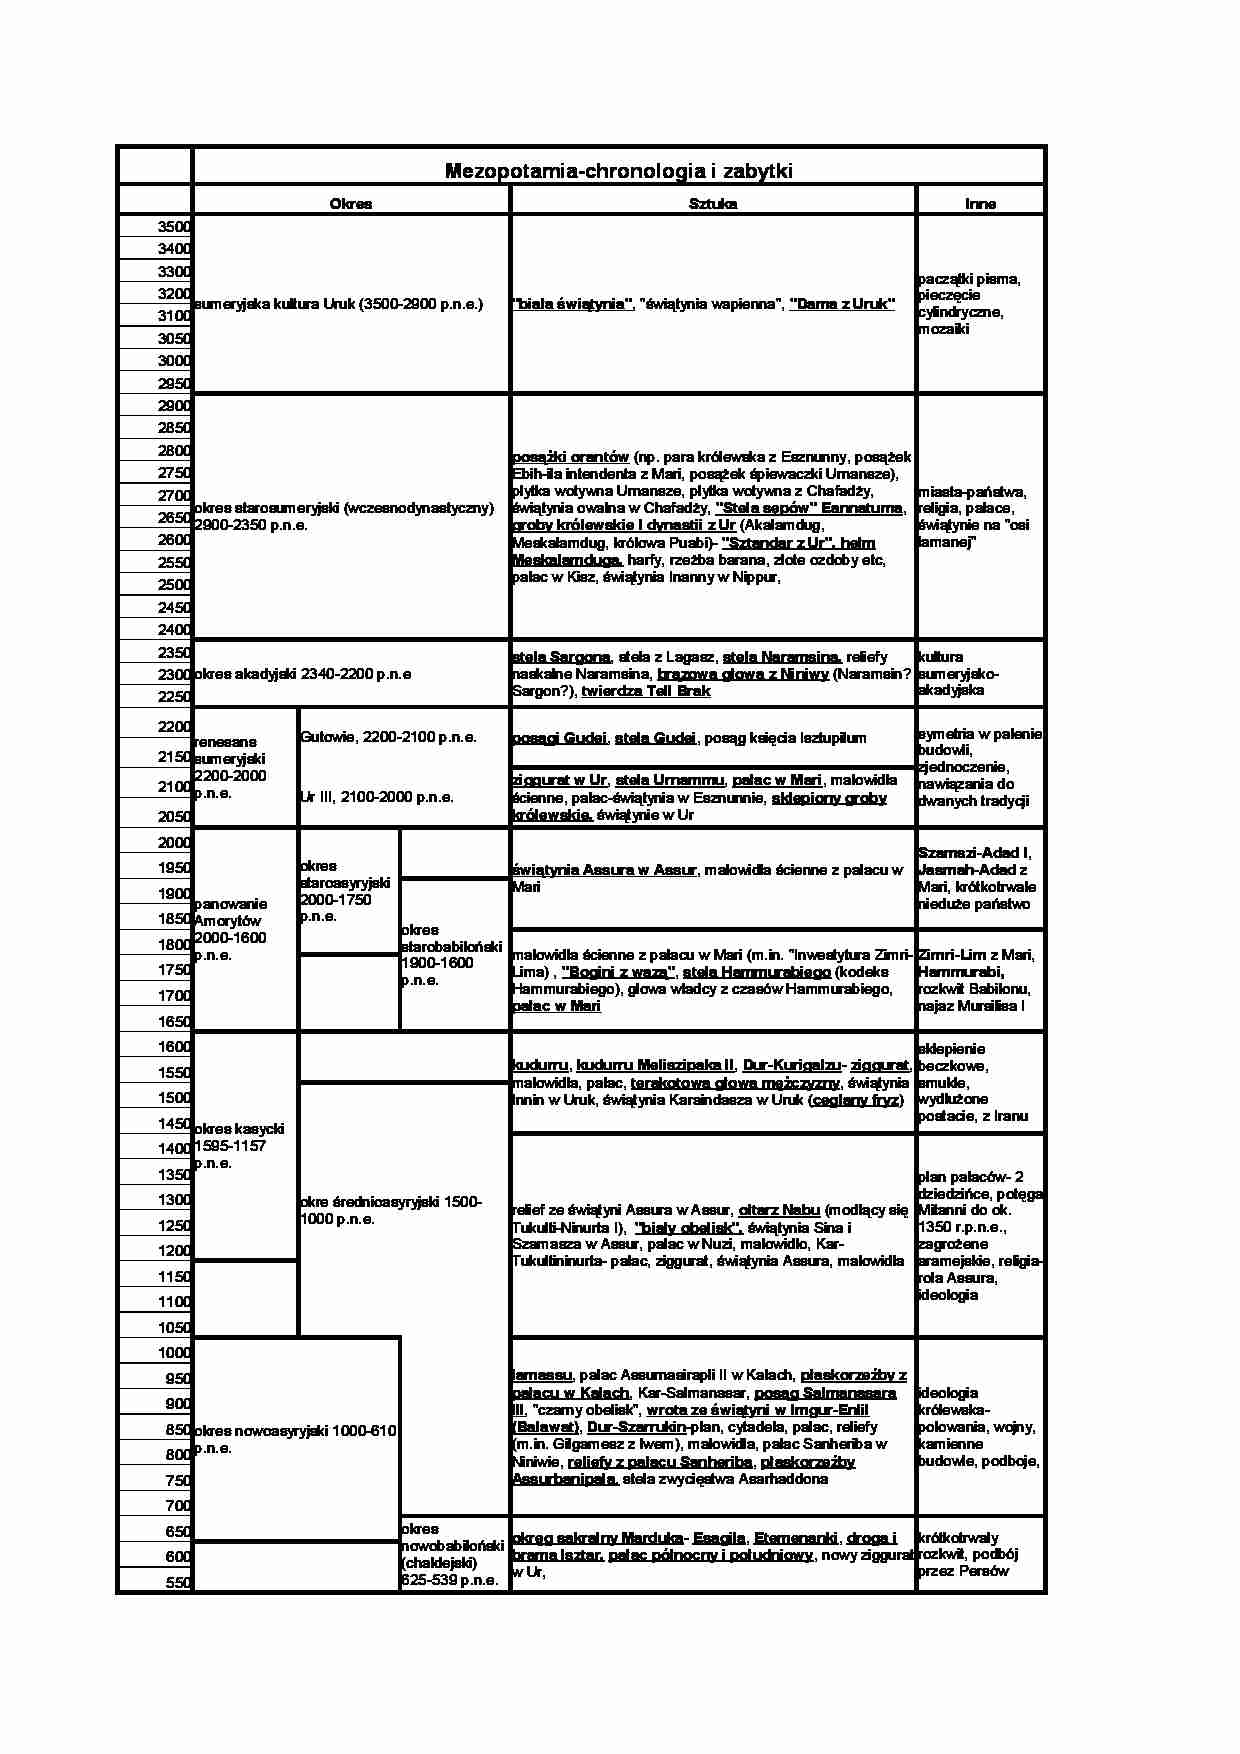 Mezopotamia-chronologia - strona 1